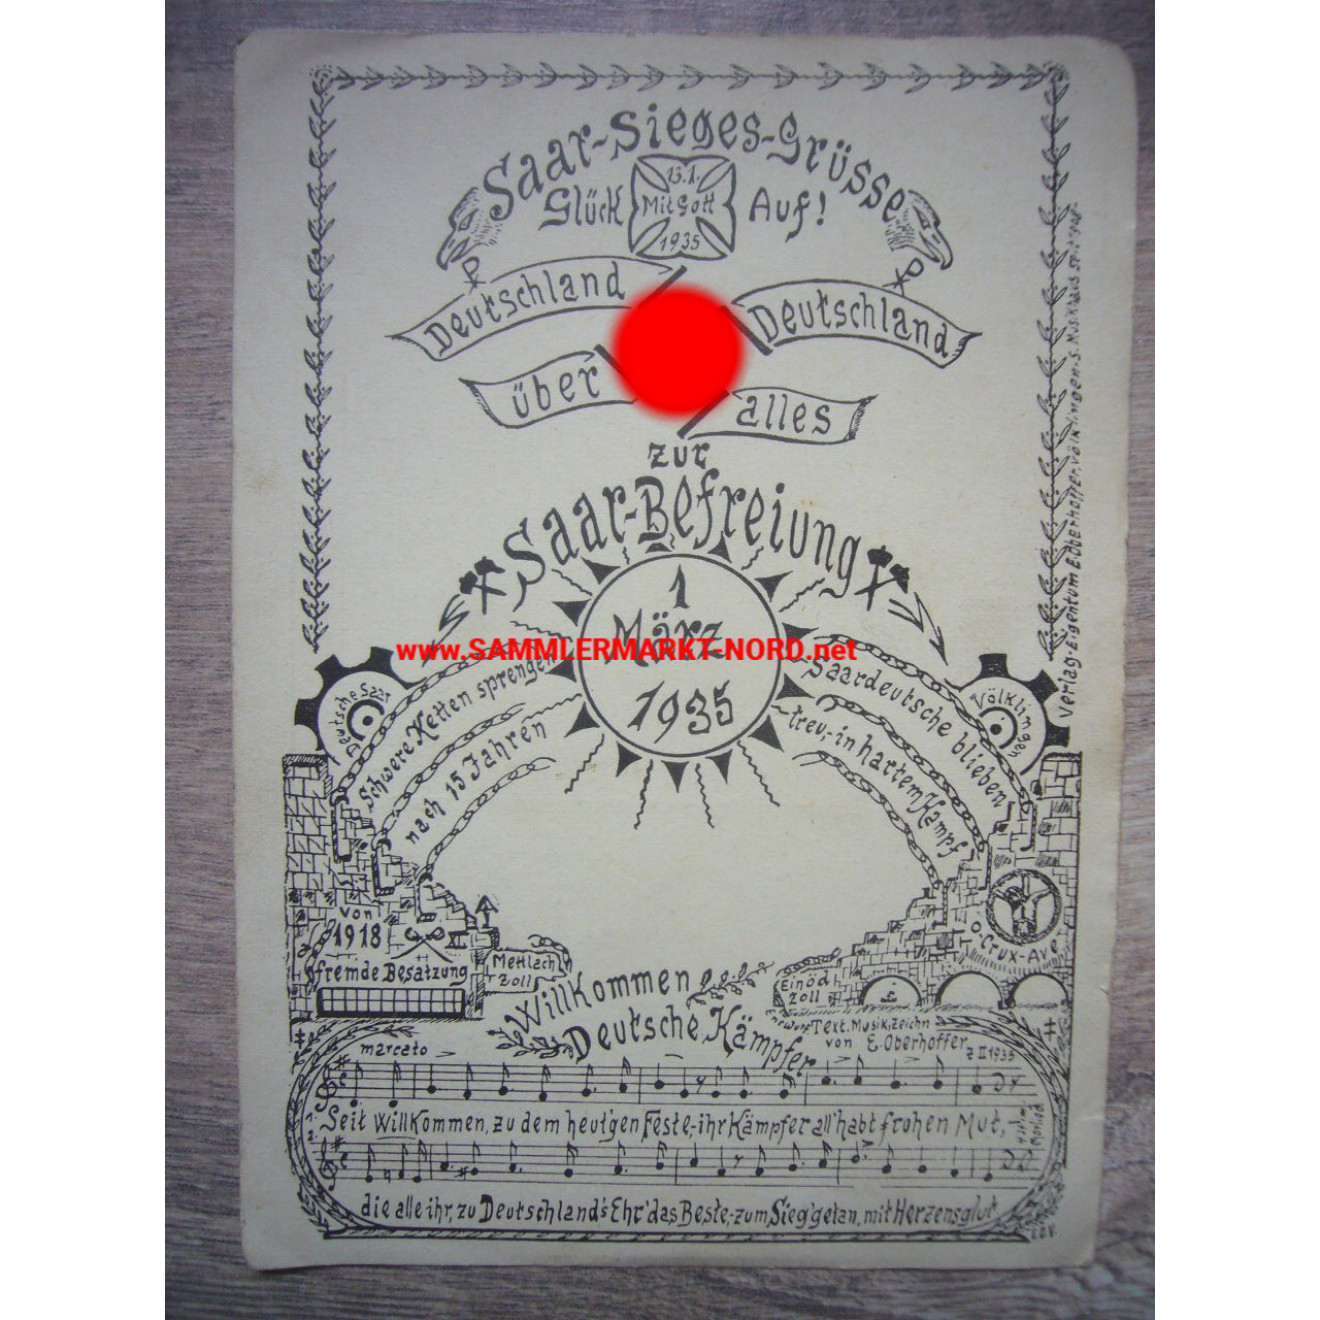 Saar-Sieges-Grüße 1935 - Saarlandabstimmung - Postkarte